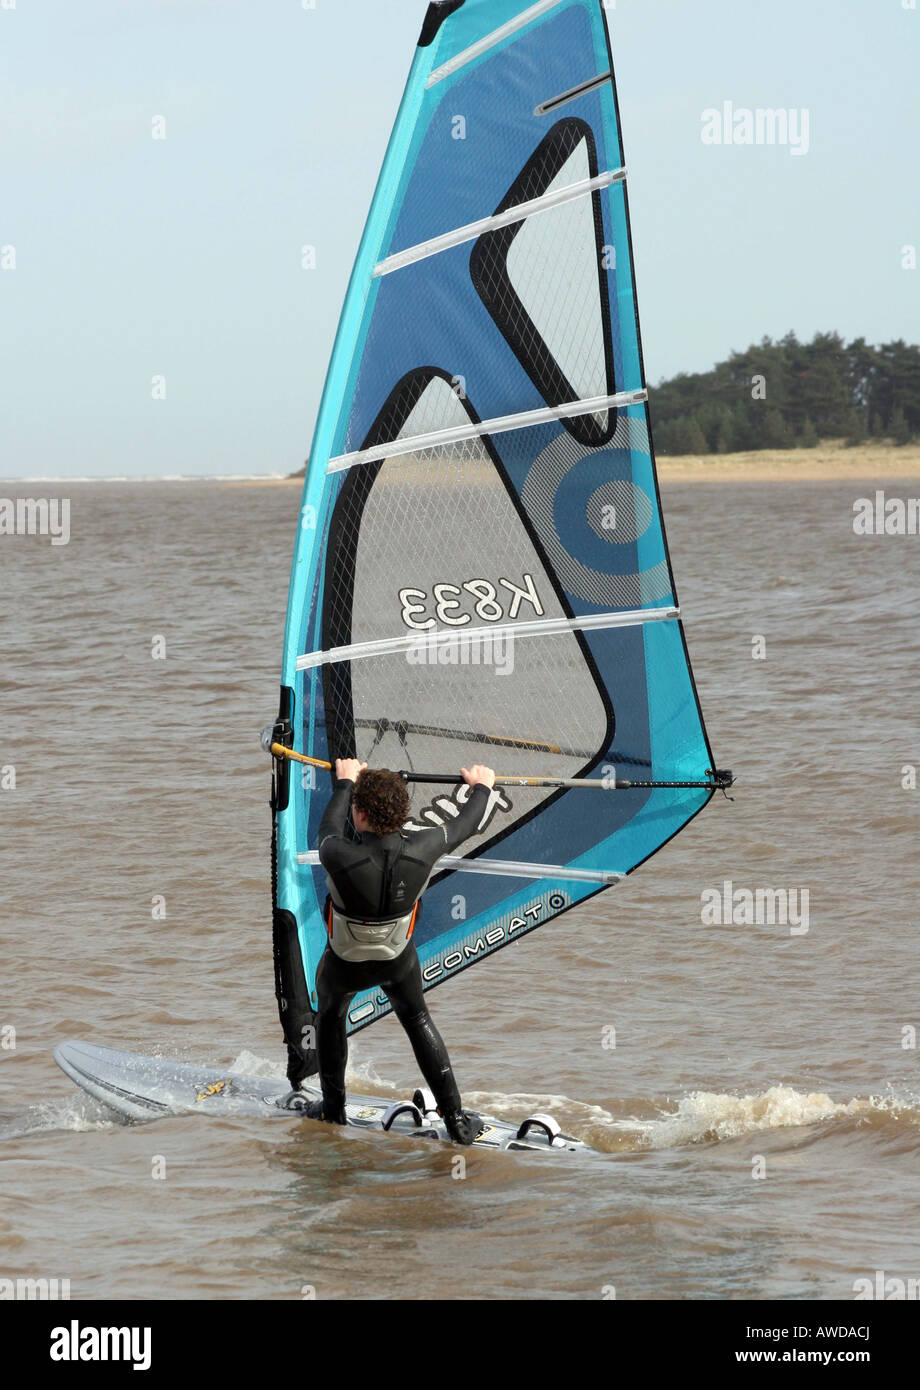 Giovani windsurfer praticando si muove Foto Stock